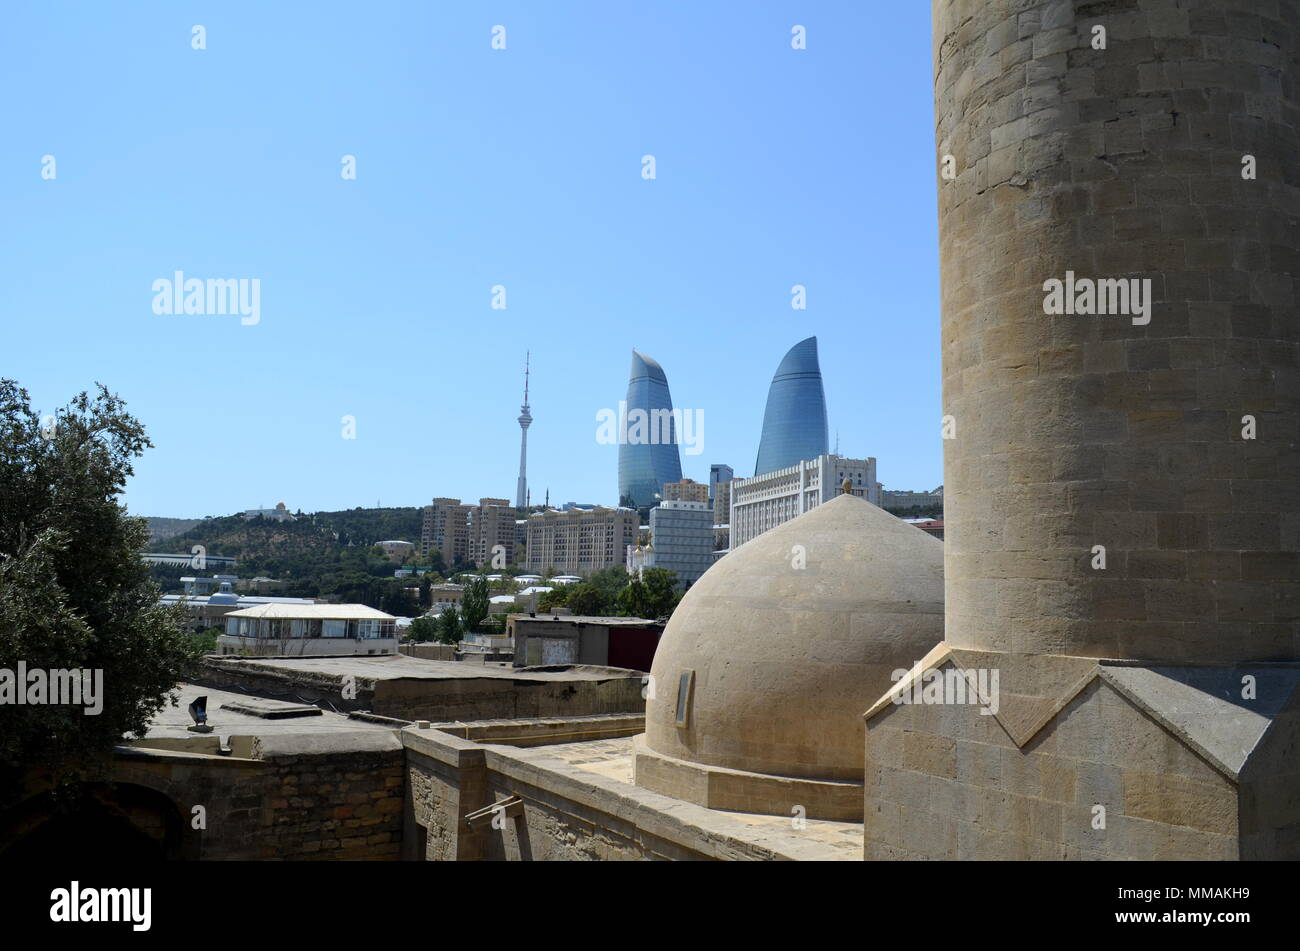 Vue panoramique de Bakou, la capitale de l'Azerbaïdjan situé par la mer Caspienne mer. Vu d'un hammam. Banque D'Images